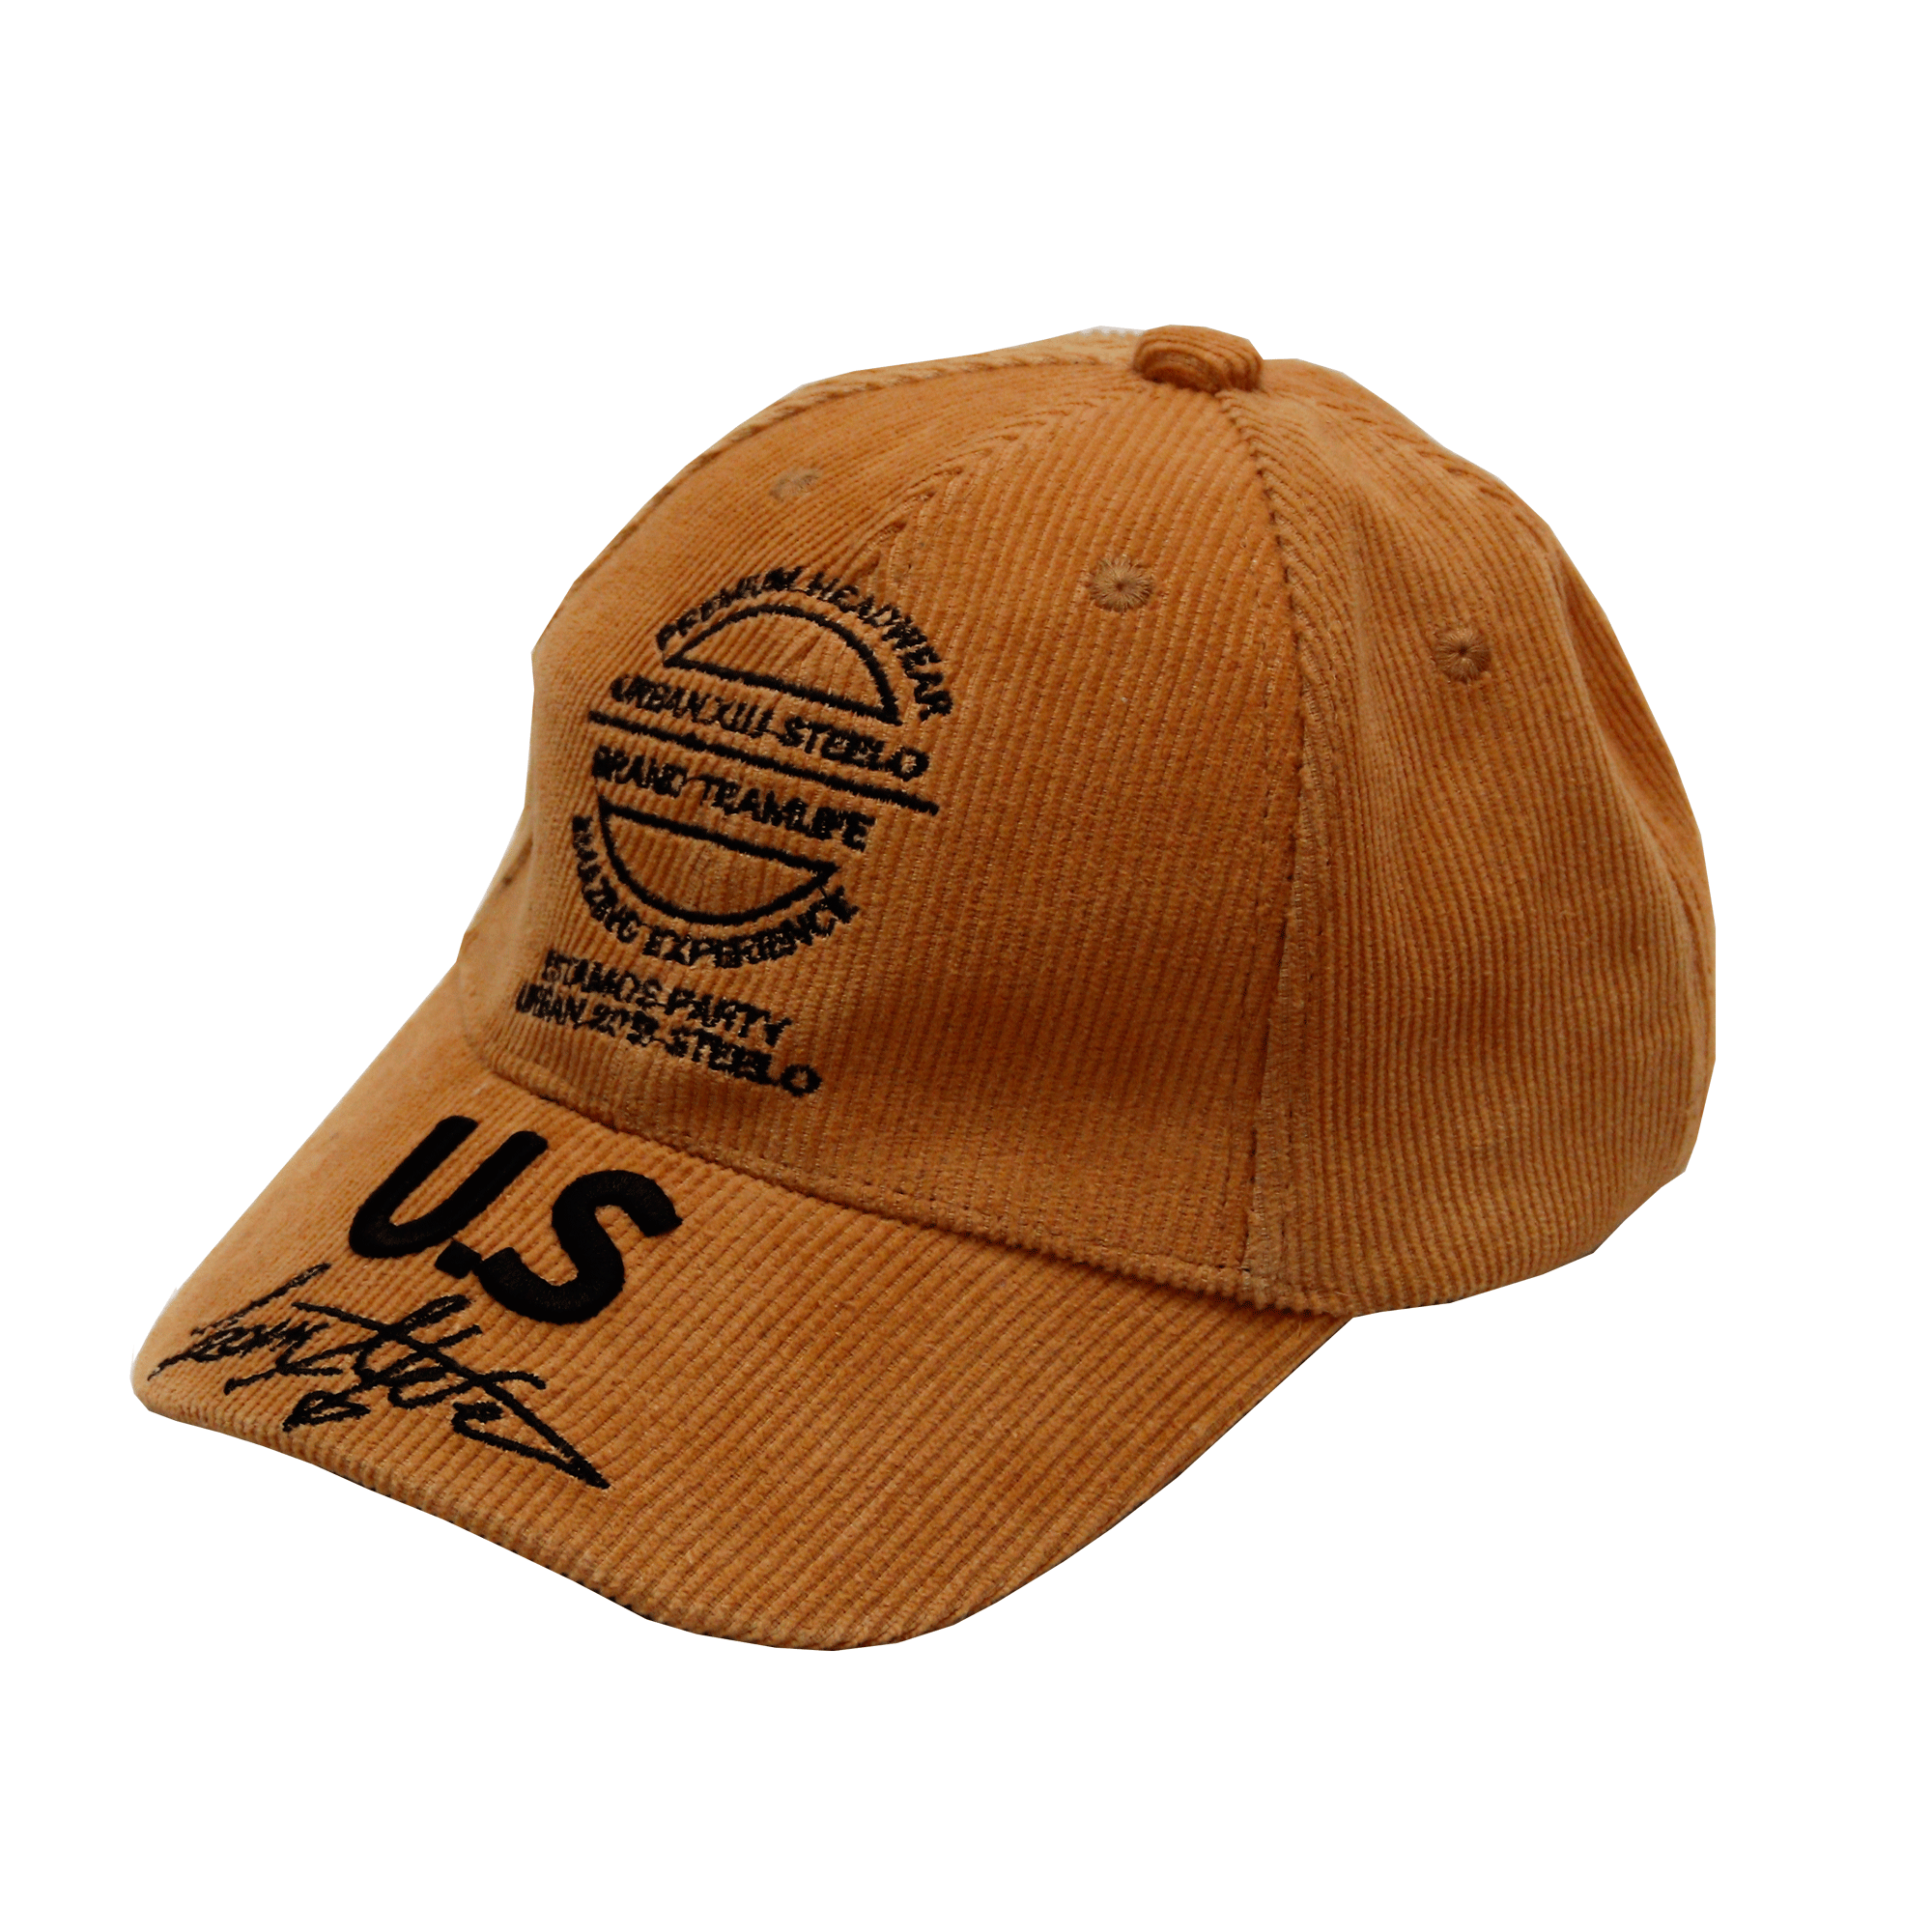 Գլխարկ  53-9  US